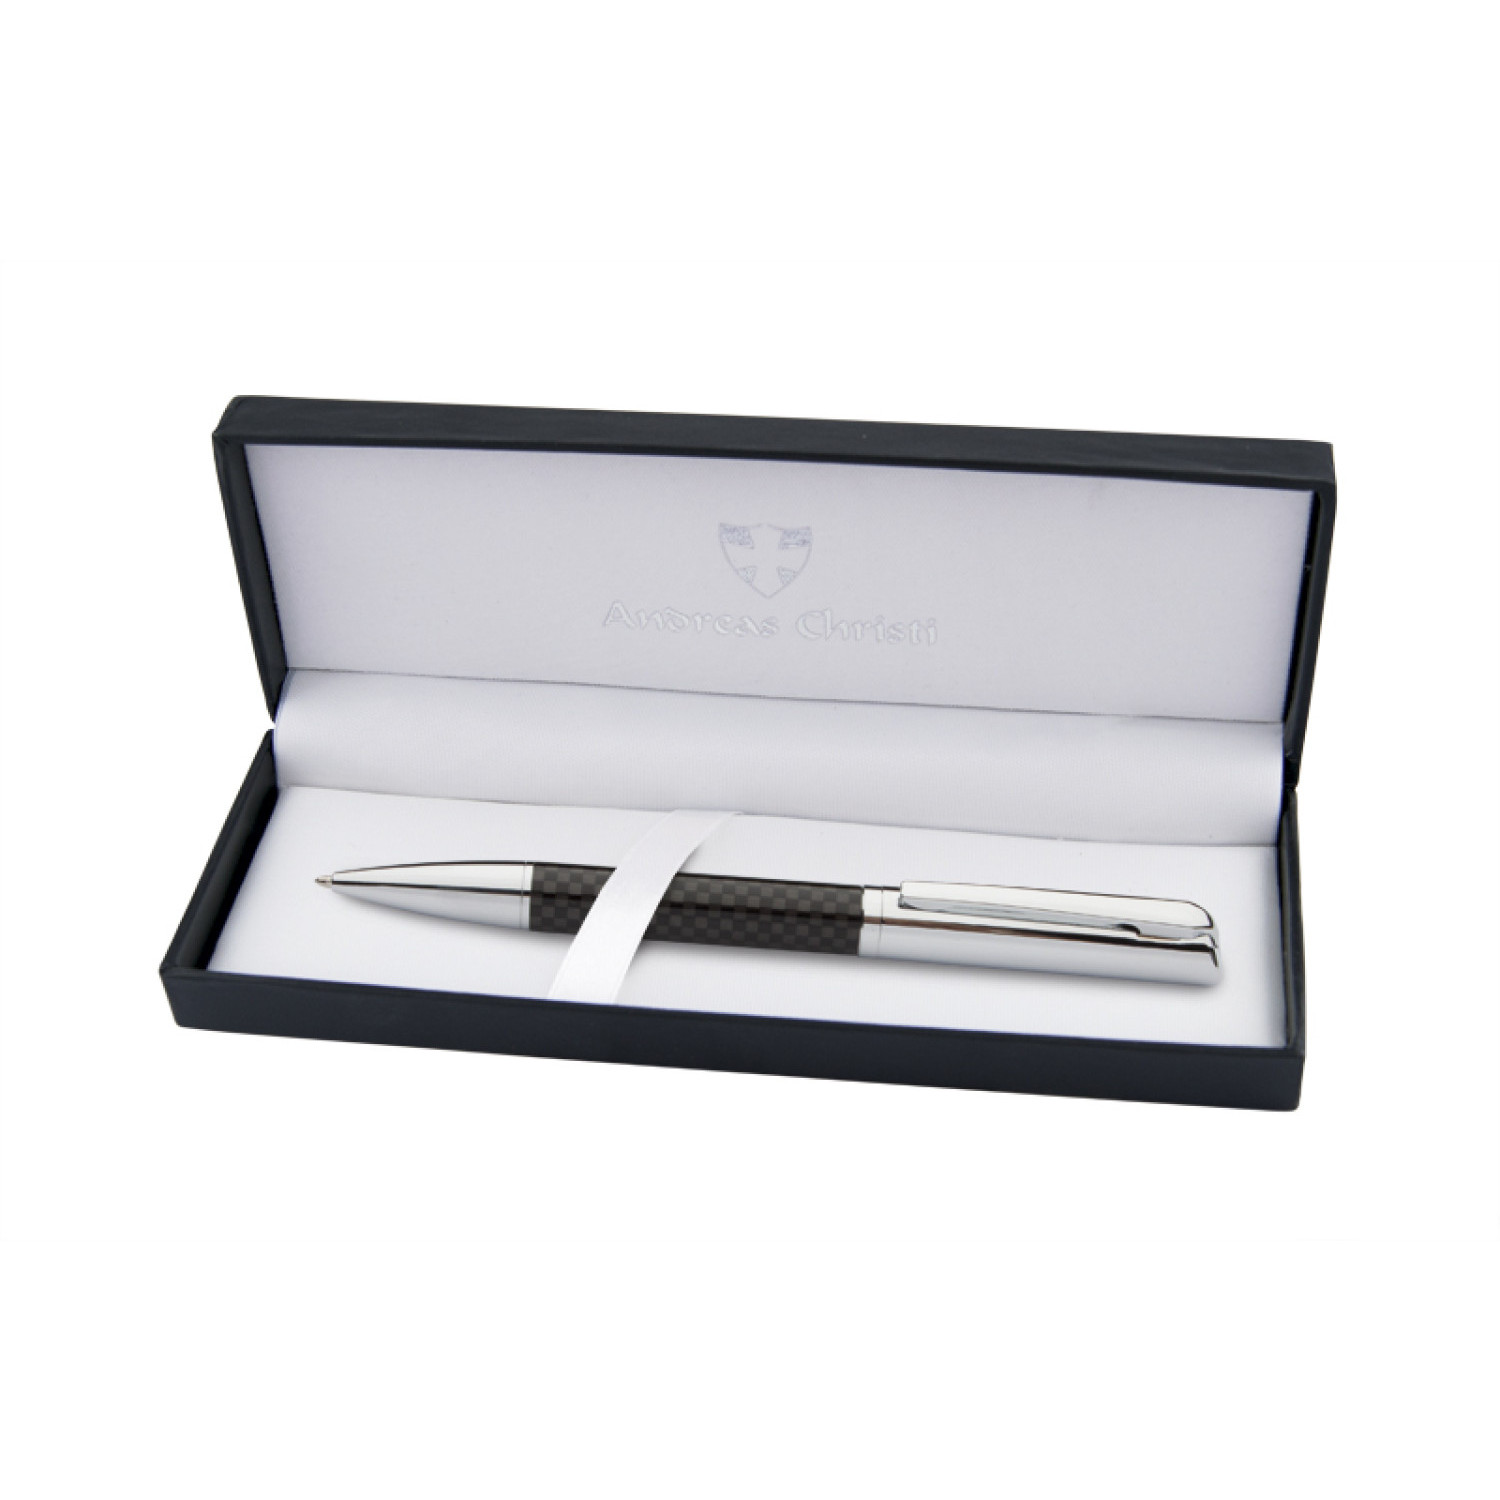 Mетална химикалка Lugano 2052-Box, в кутия, сребърен